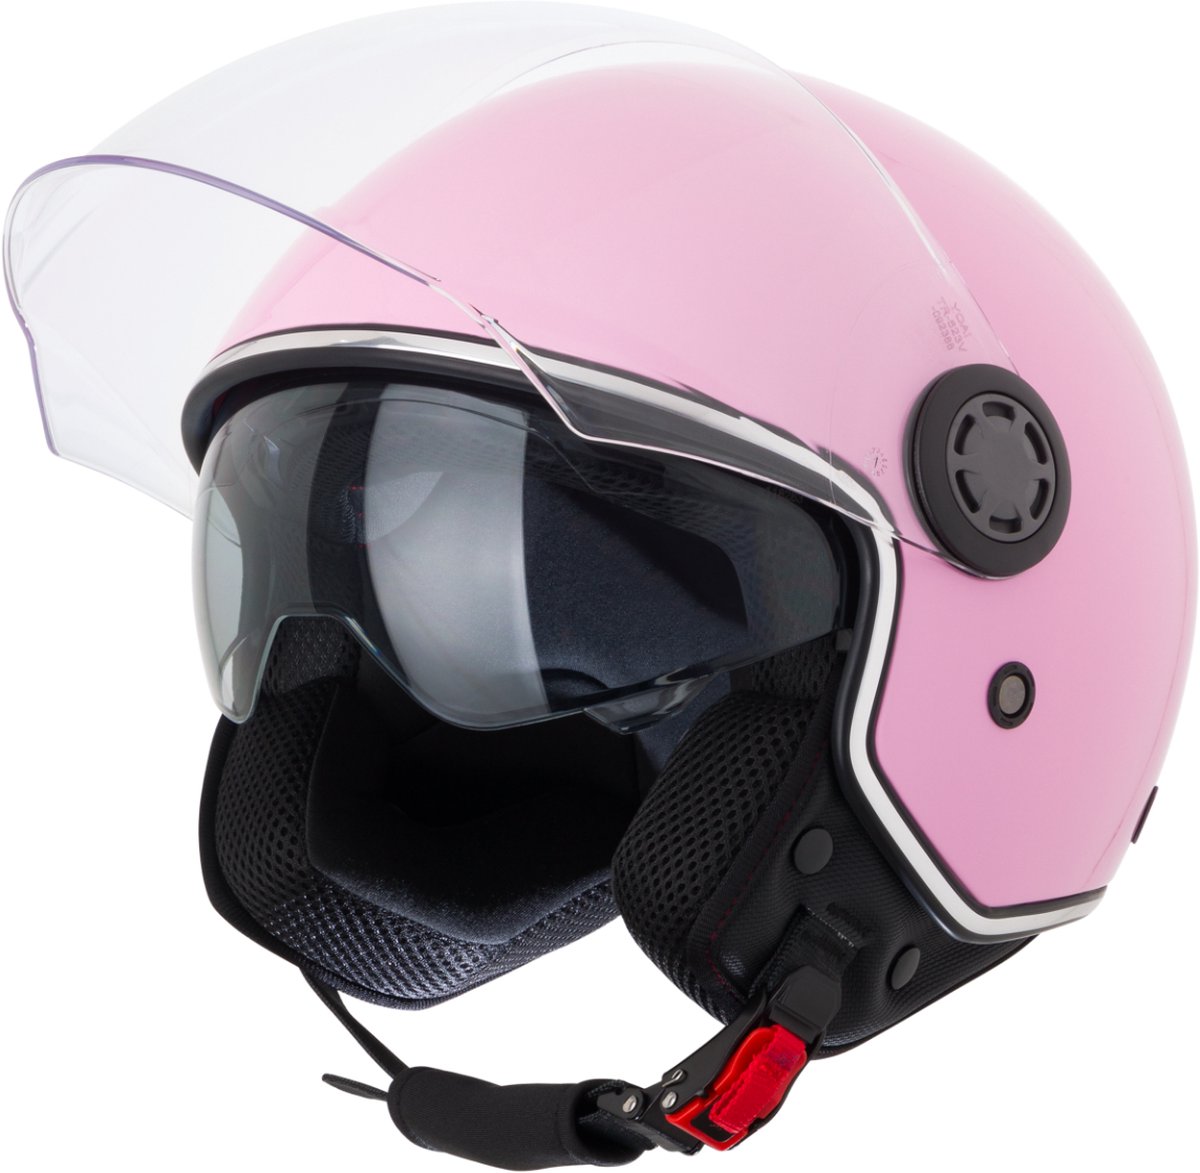 VINZ Pavia Scooter Helm met zonnevizier / Jethelm / Brommer Helm / Motorhelm / Scooterhelm Retro / Snorfiets helm / Snorscooter helm - Geschikt Voor Helmplicht Blauw Kenteken - Roze